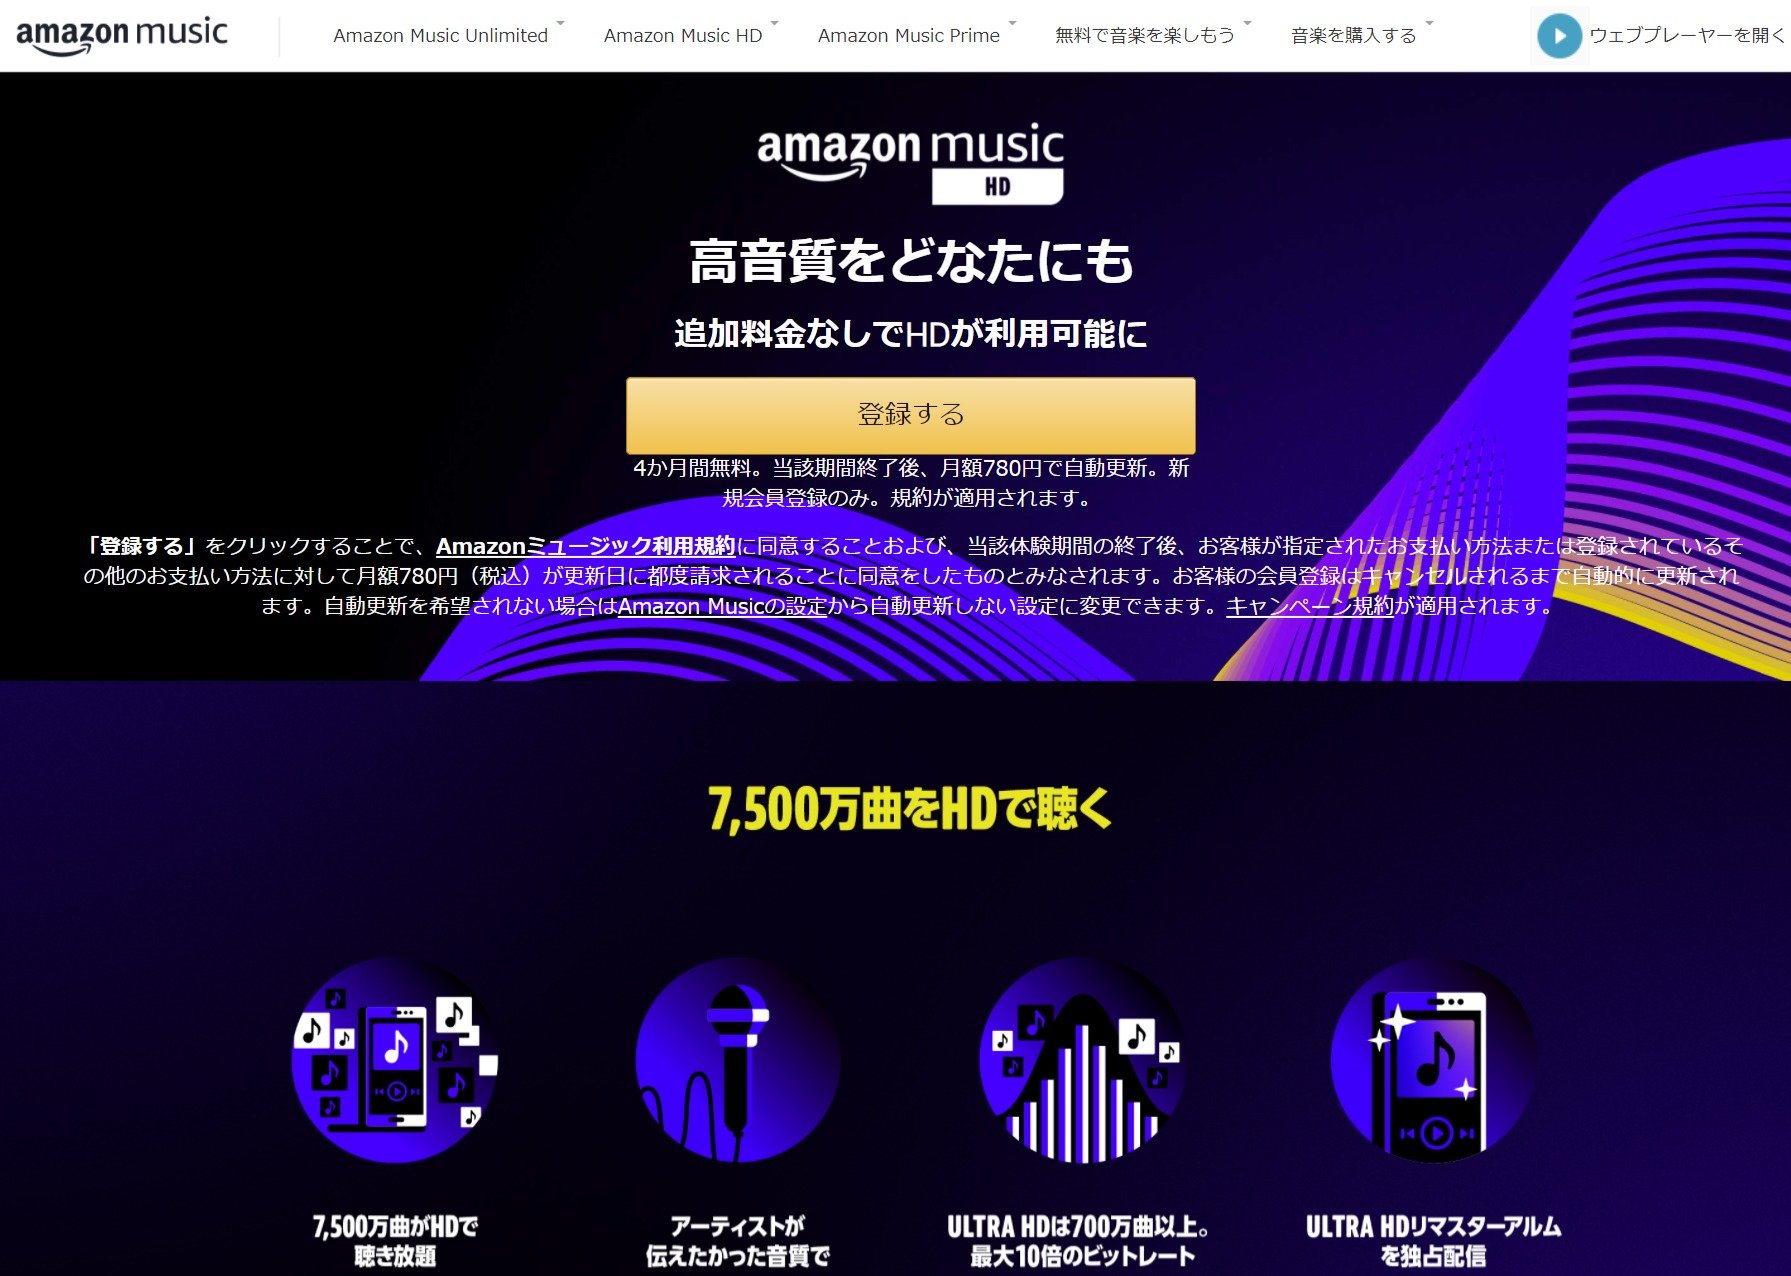 ハイレゾ配信「Amazon Music HD」日本でも追加料金不要に